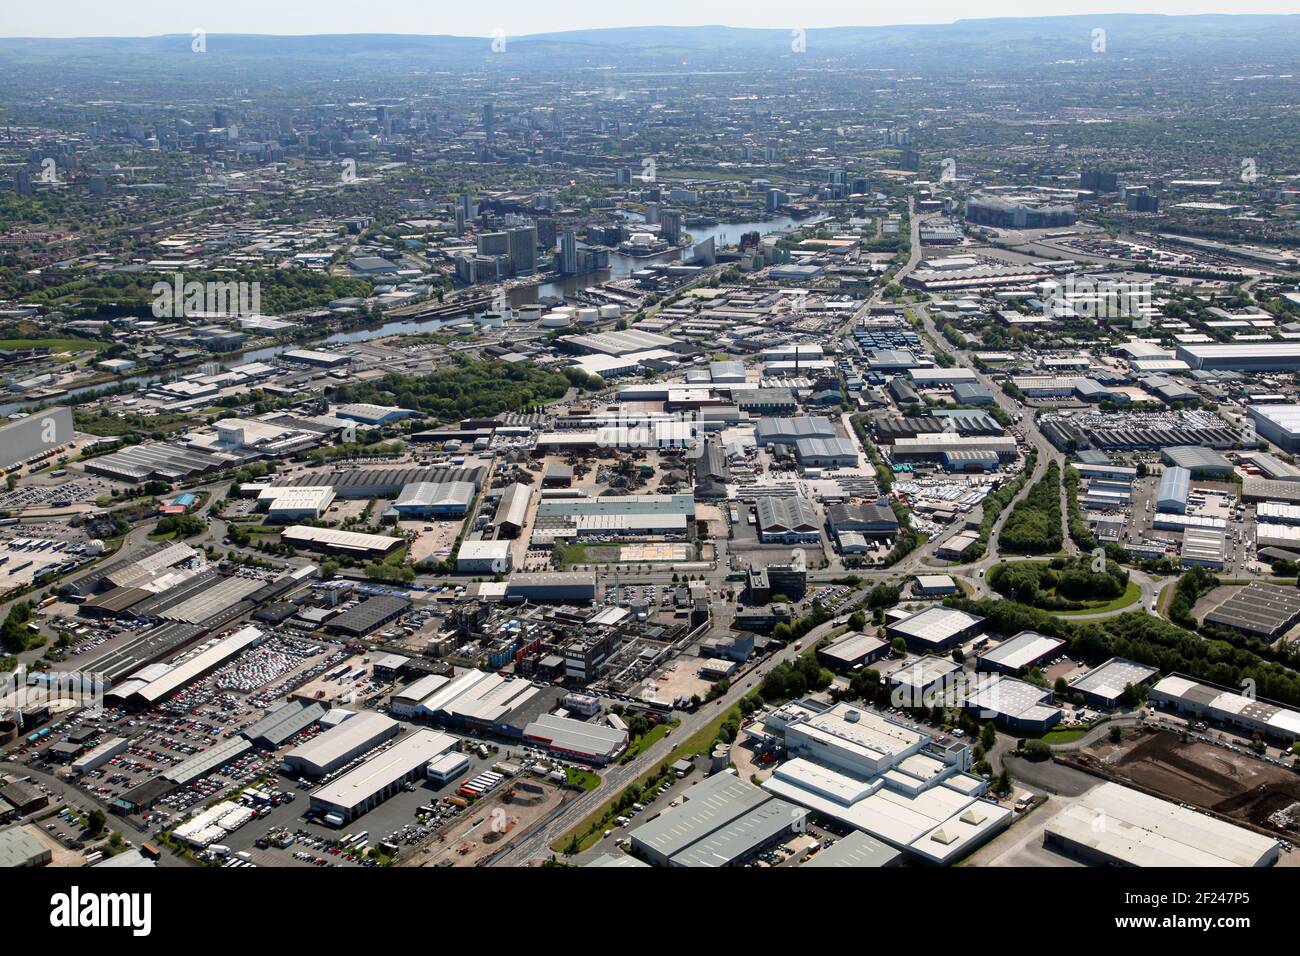 Vista aérea del enorme parque industrial Trafford con El horizonte del centro de la ciudad de Manchester al fondo Foto de stock